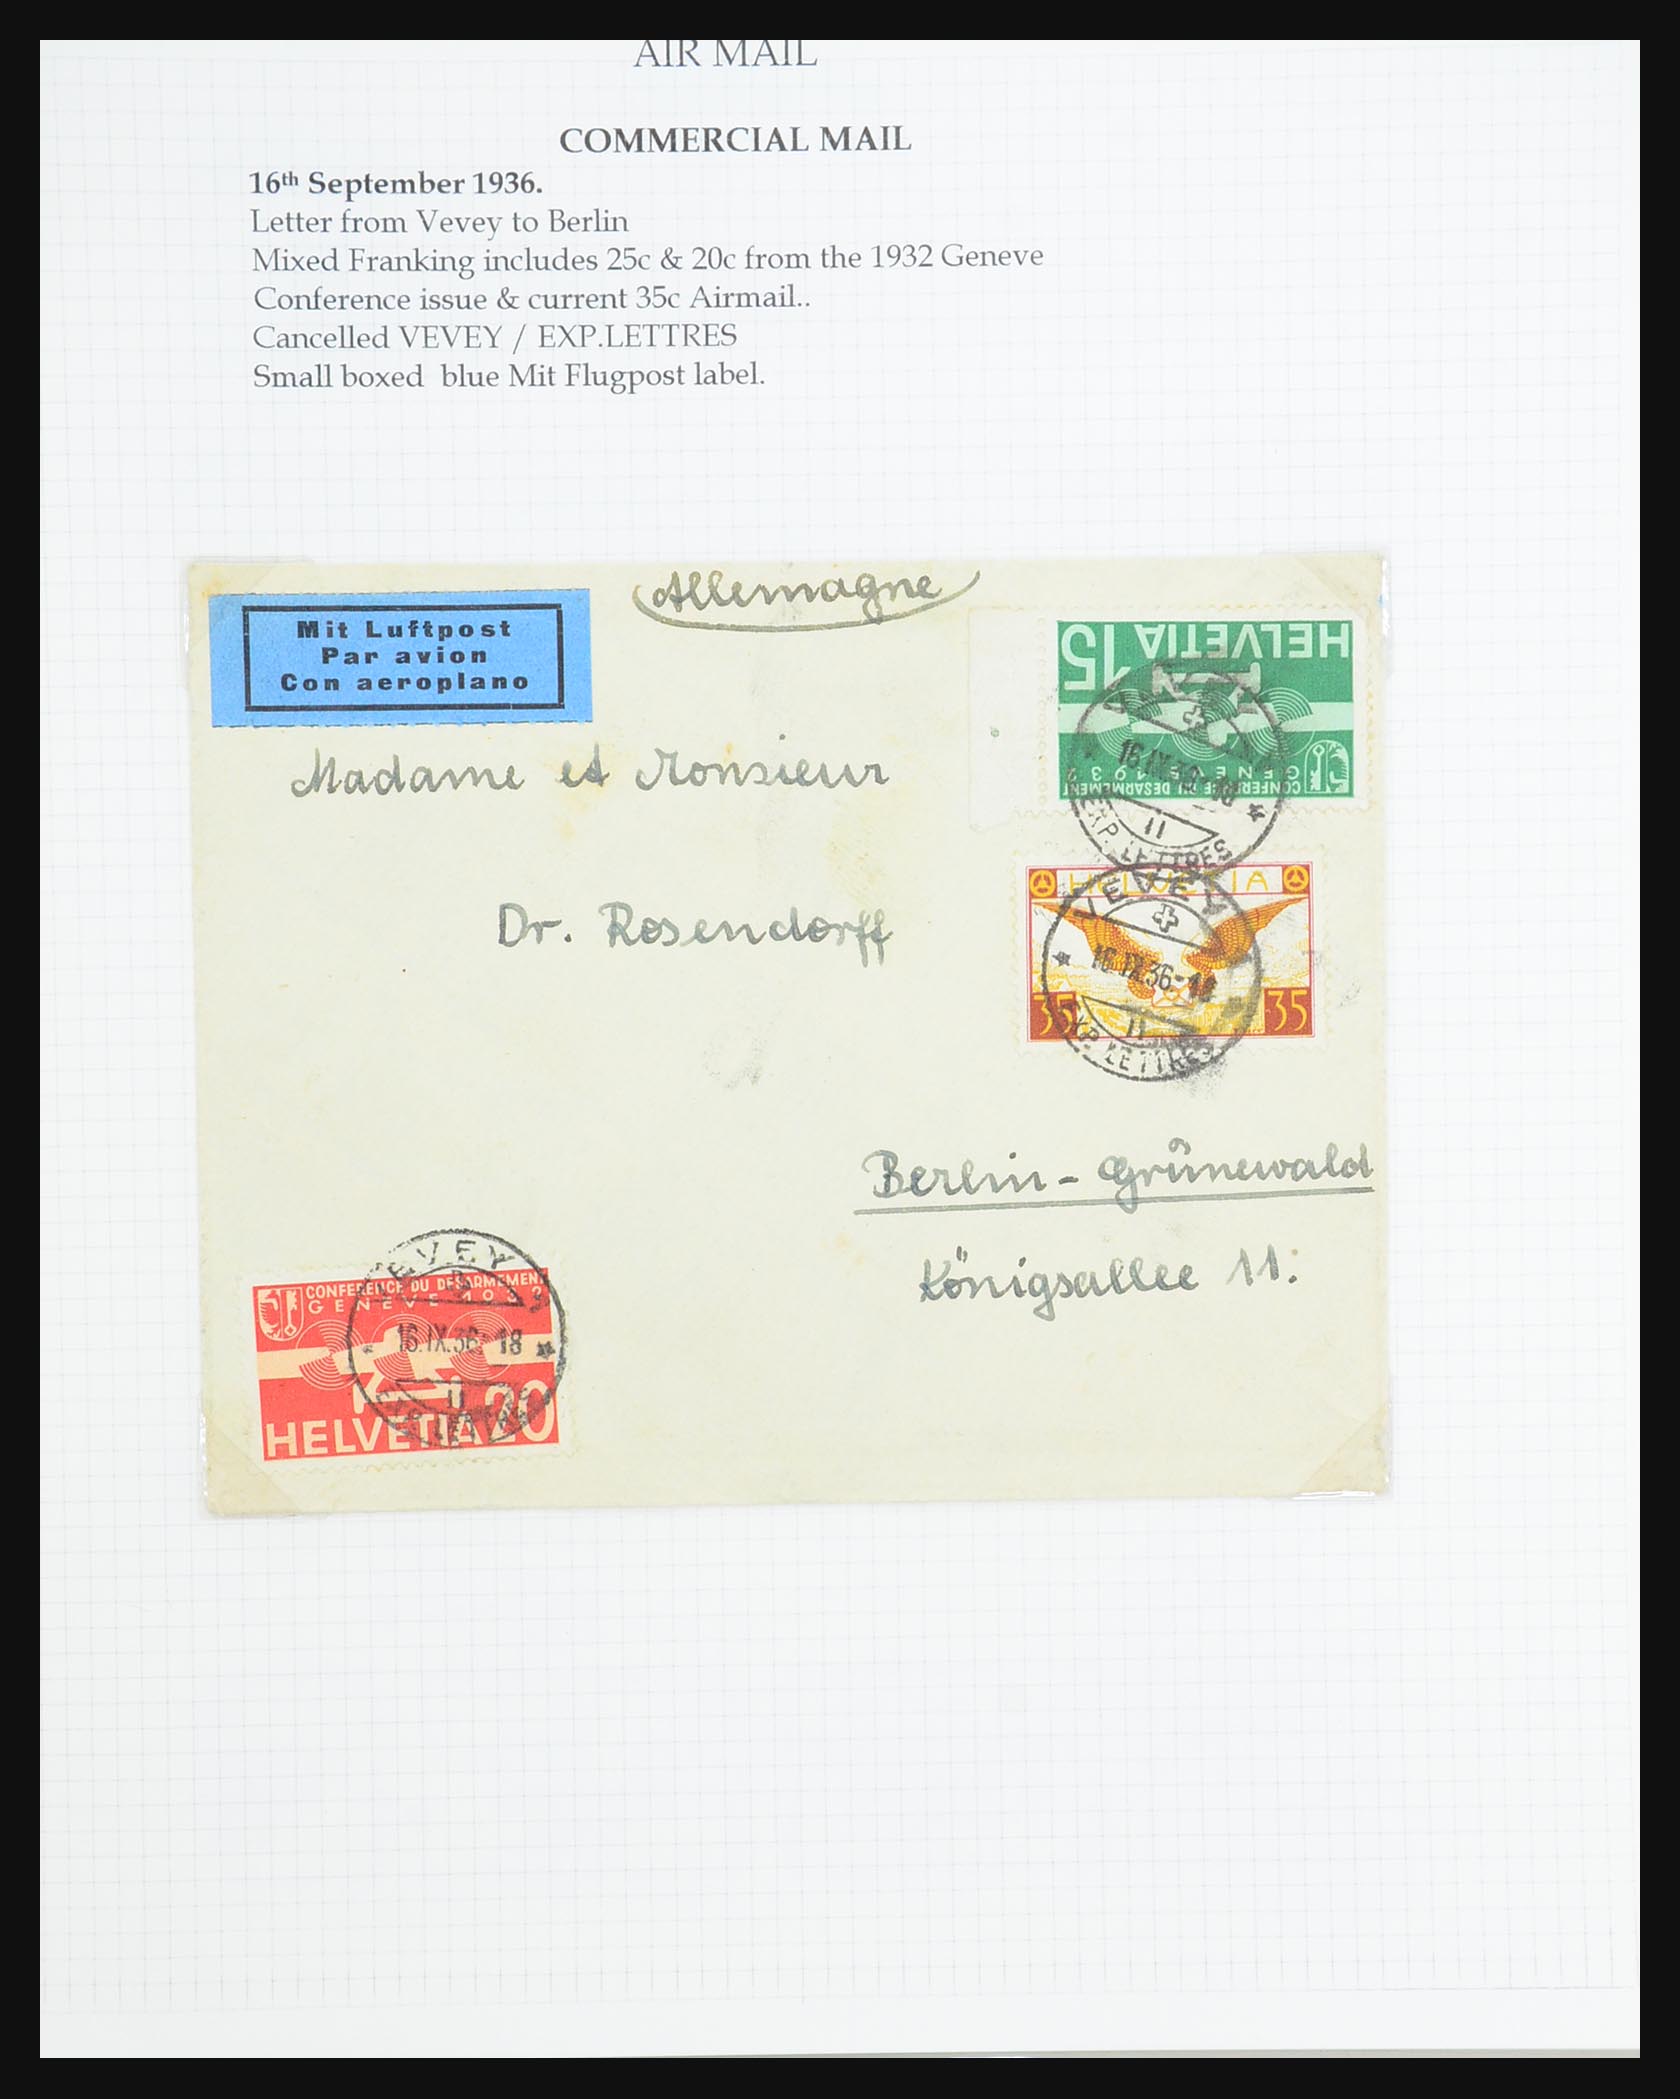 31444 077 - 31444 Switzerland airmail covers 1922-1946.